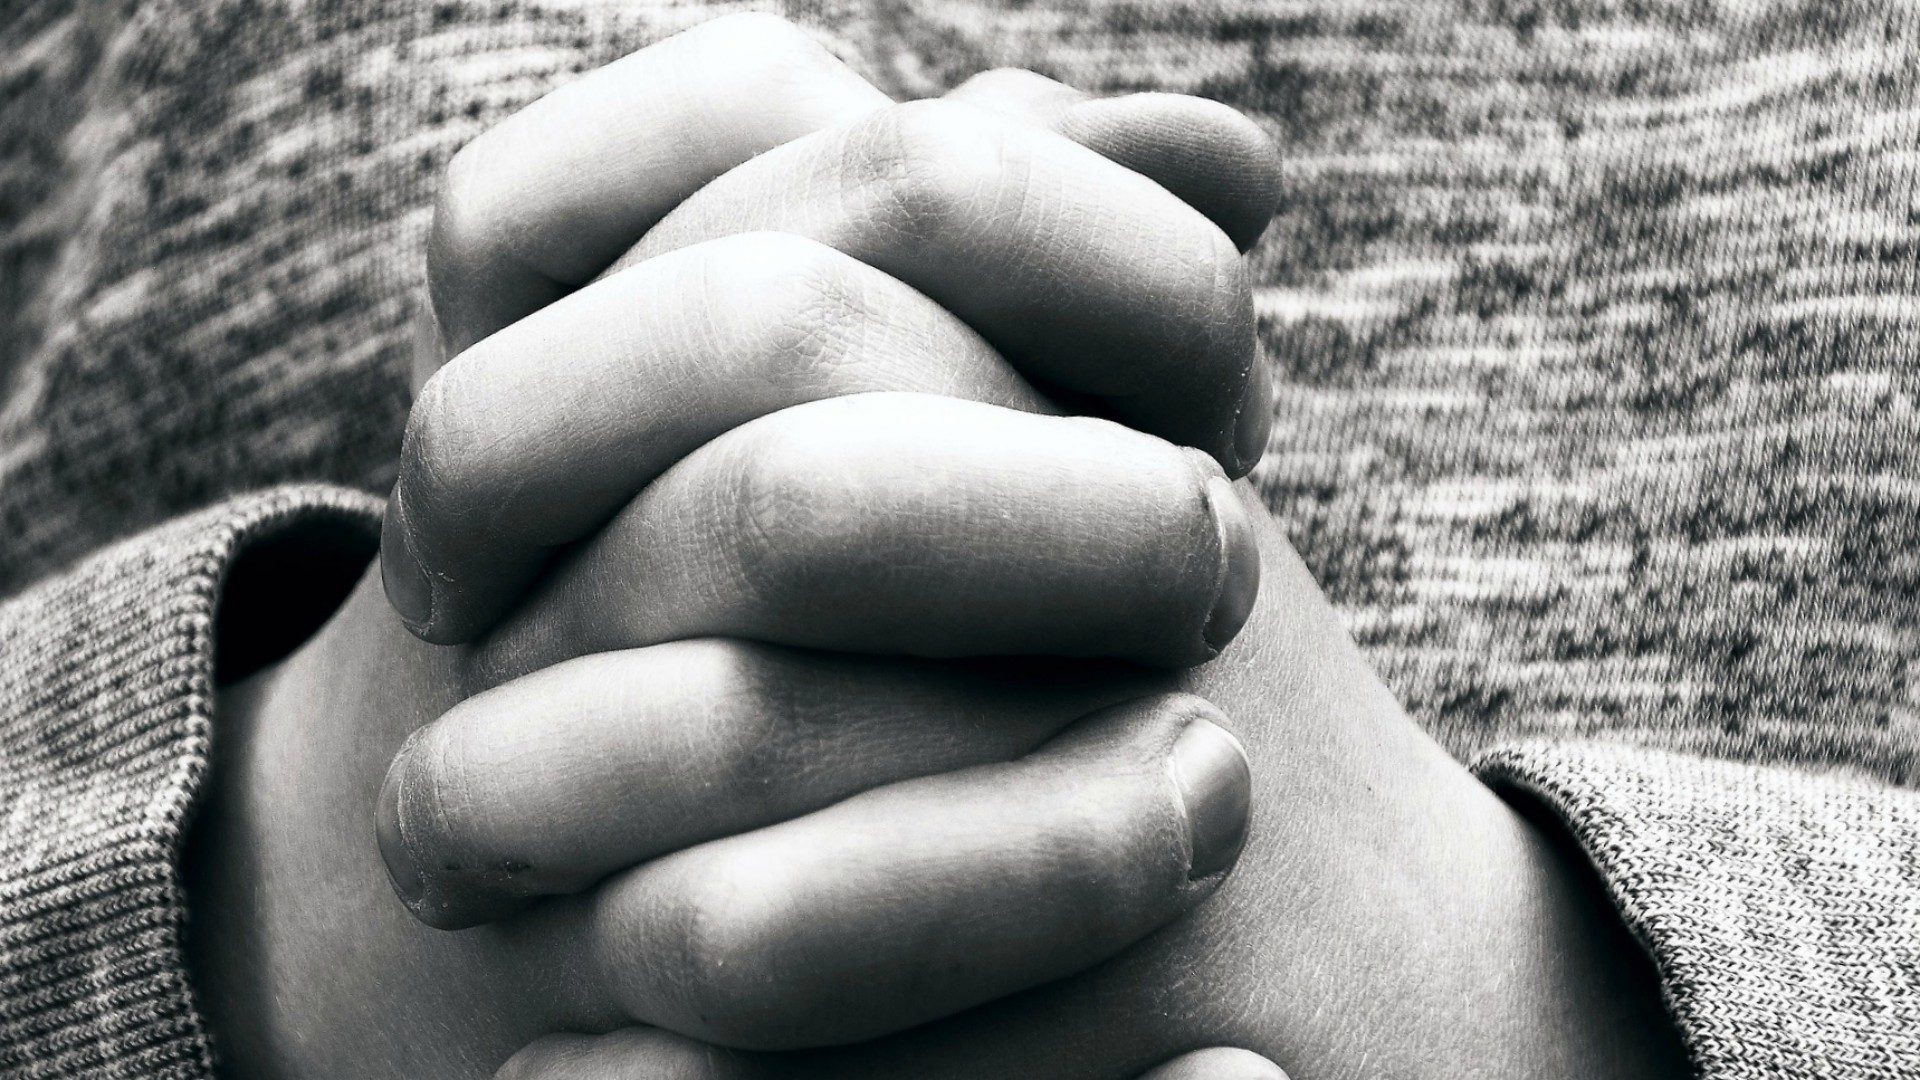 Le pape demande de prier "comme des enfants" (Pixabay.com)